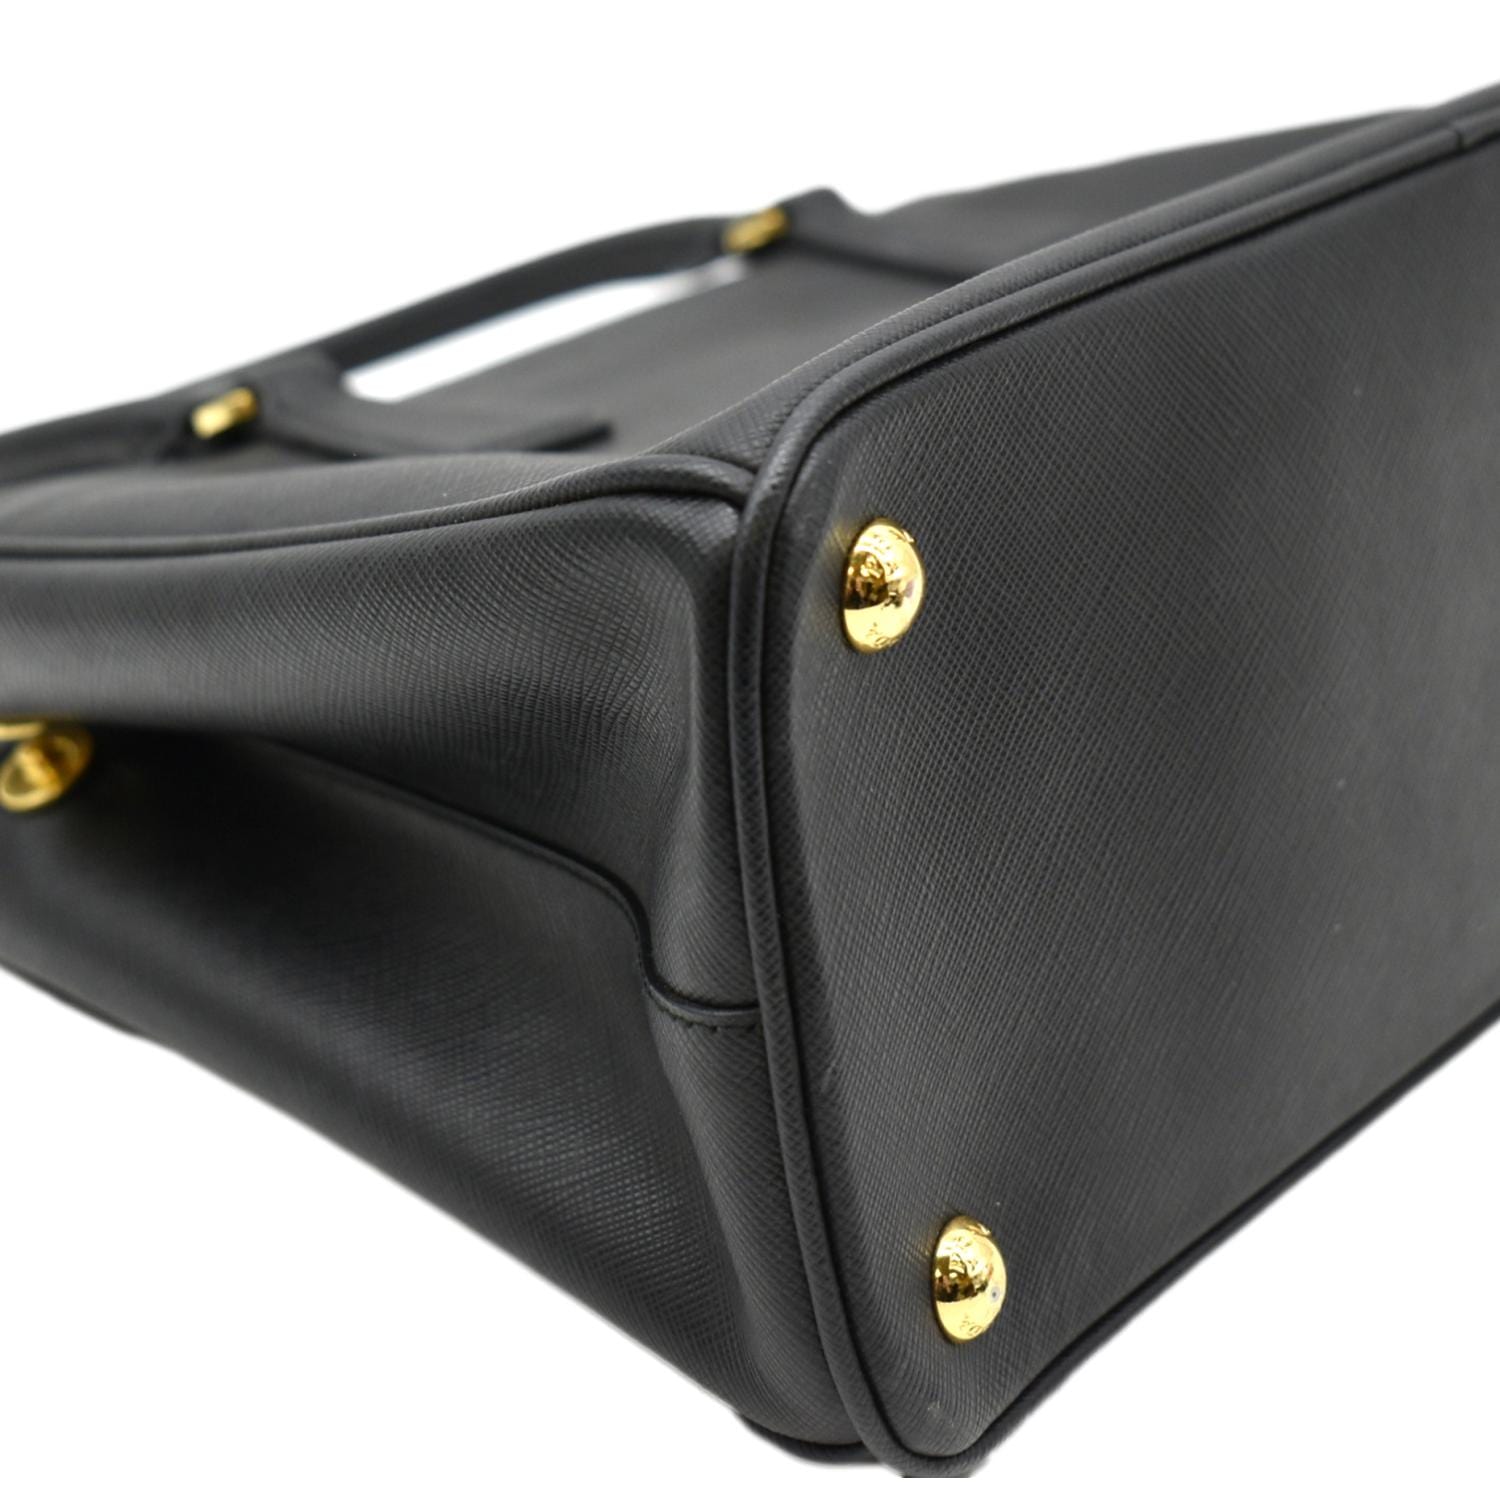 Prada Galleria Saffiano Leather Double Zip Bag, * Small *, Black